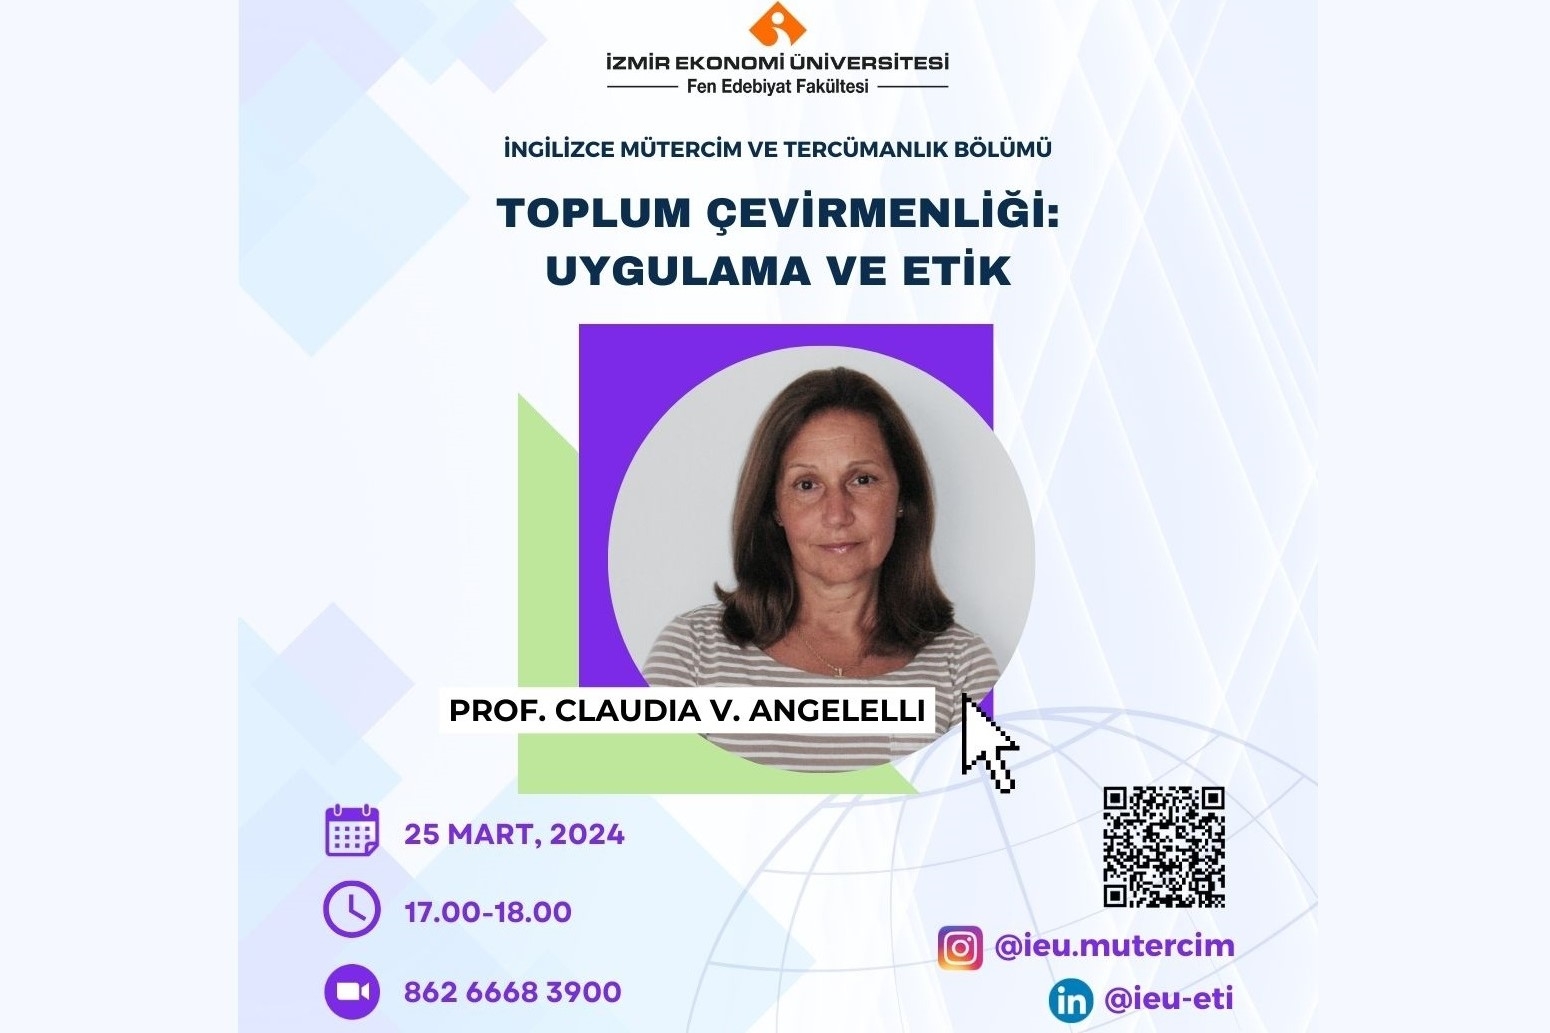 Prof. Dr. Claudia V. Angelelli, “Toplum Çevirmenliği: Uygulama ve Etik” başlıklı webinarıyla İngilizce Mütercim ve Tercümanlık Bölümünün konuğu oldu.